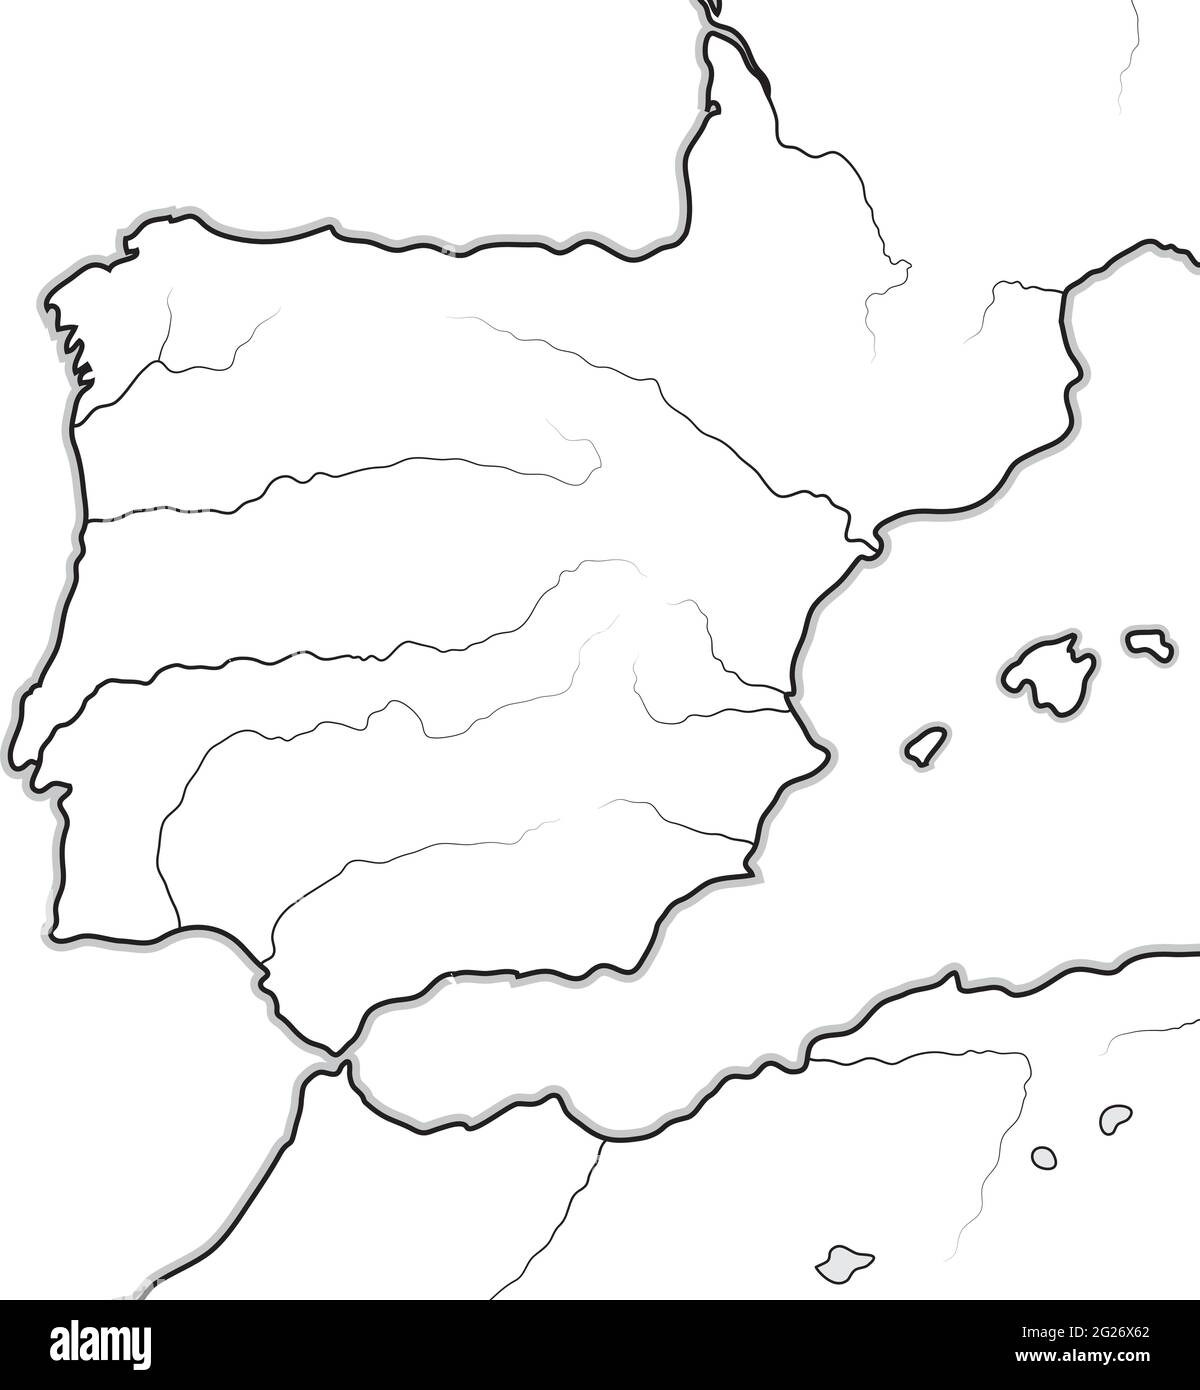 Carte des pays ESPAGNOLS: Espagne, Portugal, Catalogne, Iberia, les Pyrénées. Carte géographique. Illustration de Vecteur